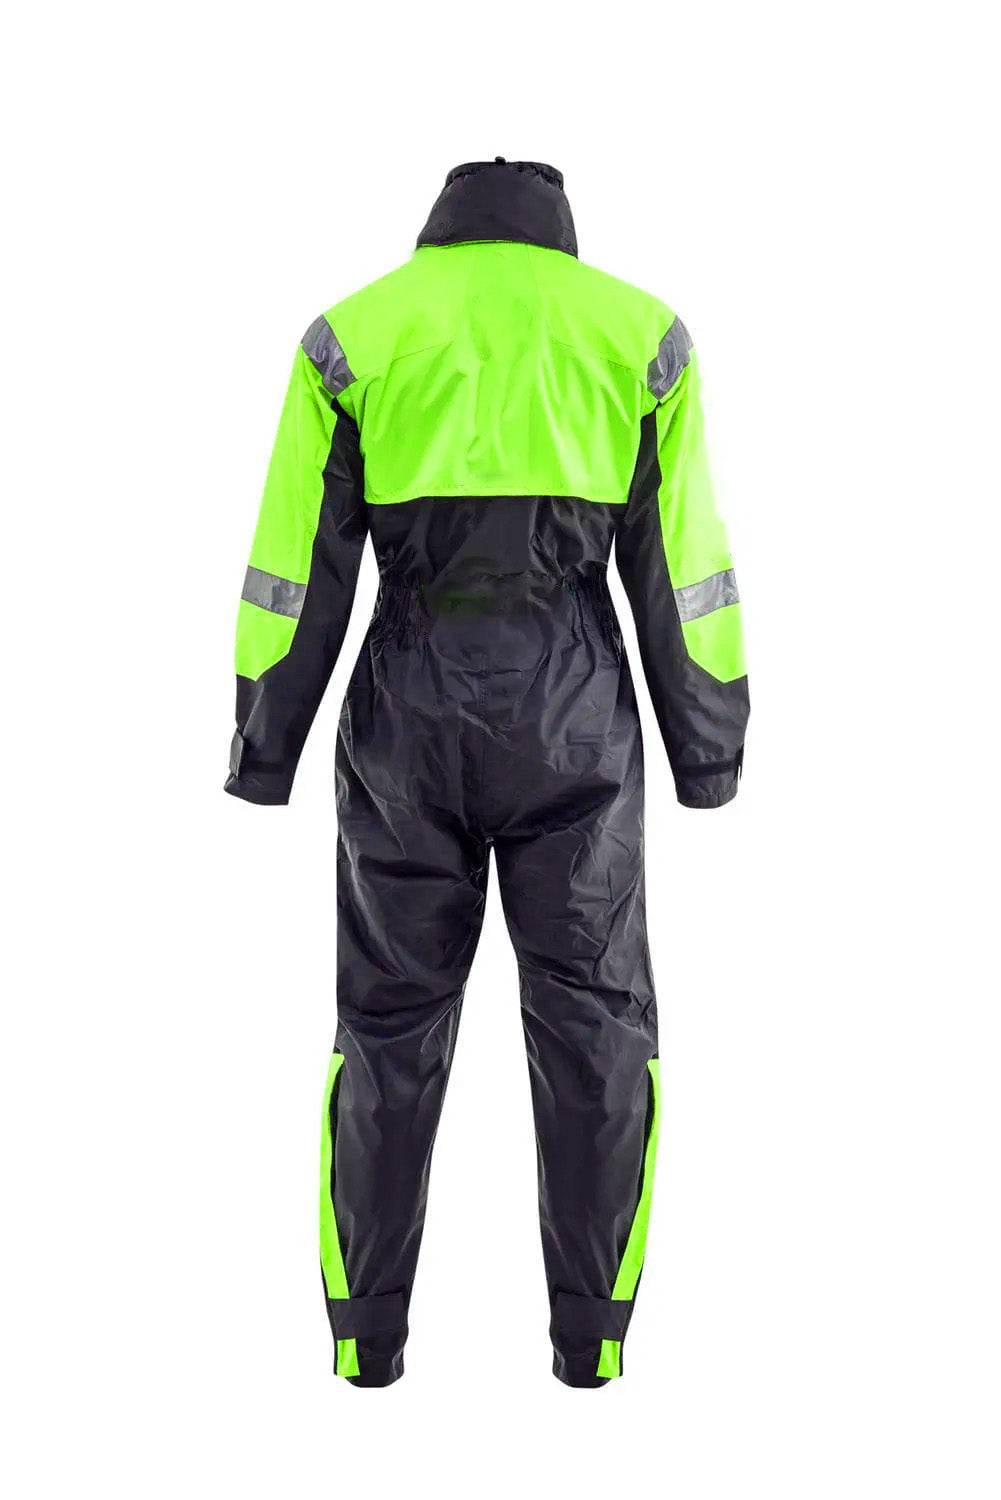 Flotation suit in green Design-02 Back